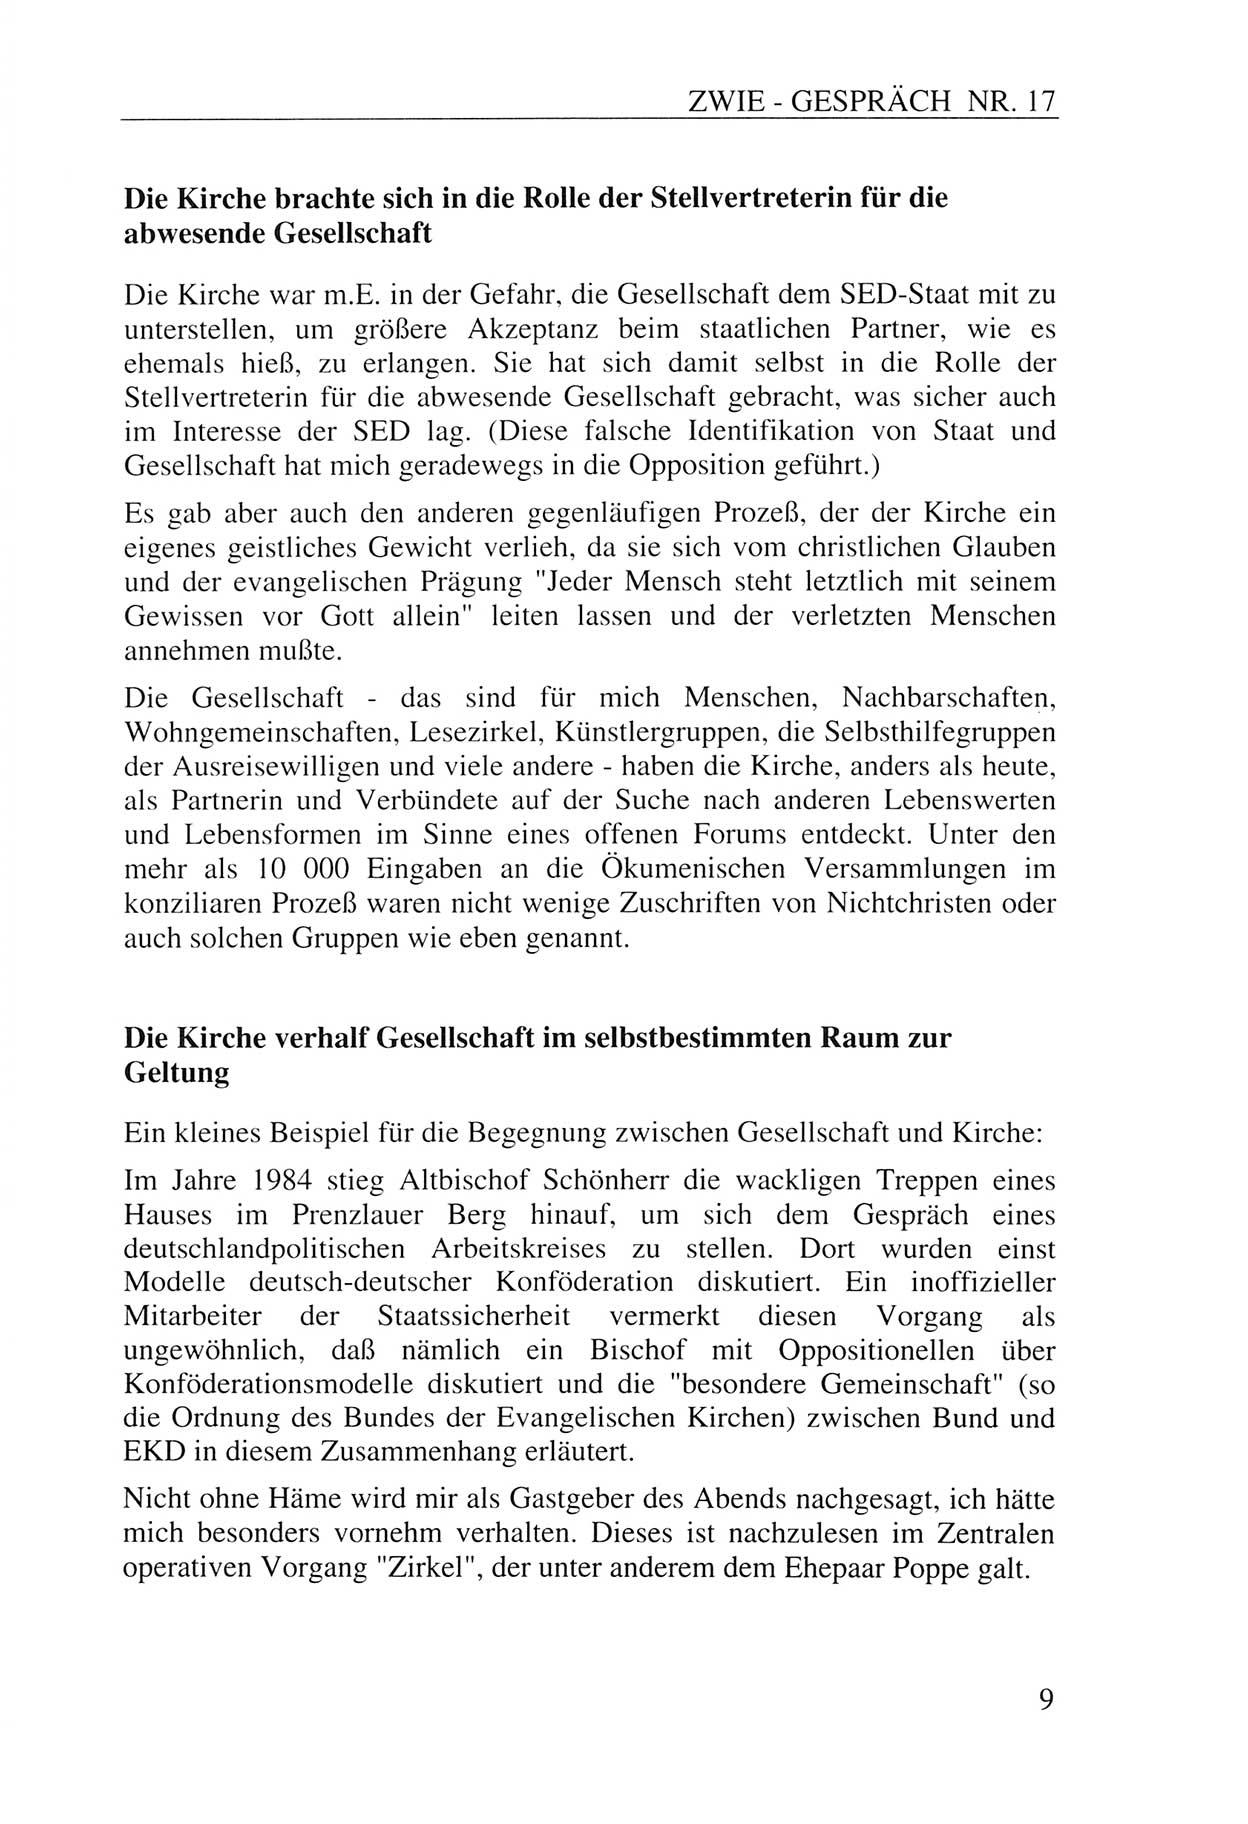 Zwie-Gespräch, Beiträge zur Aufarbeitung der Staatssicherheits-Vergangenheit [Deutsche Demokratische Republik (DDR)], Ausgabe Nr. 17, Berlin 1993, Seite 9 (Zwie-Gespr. Ausg. 17 1993, S. 9)